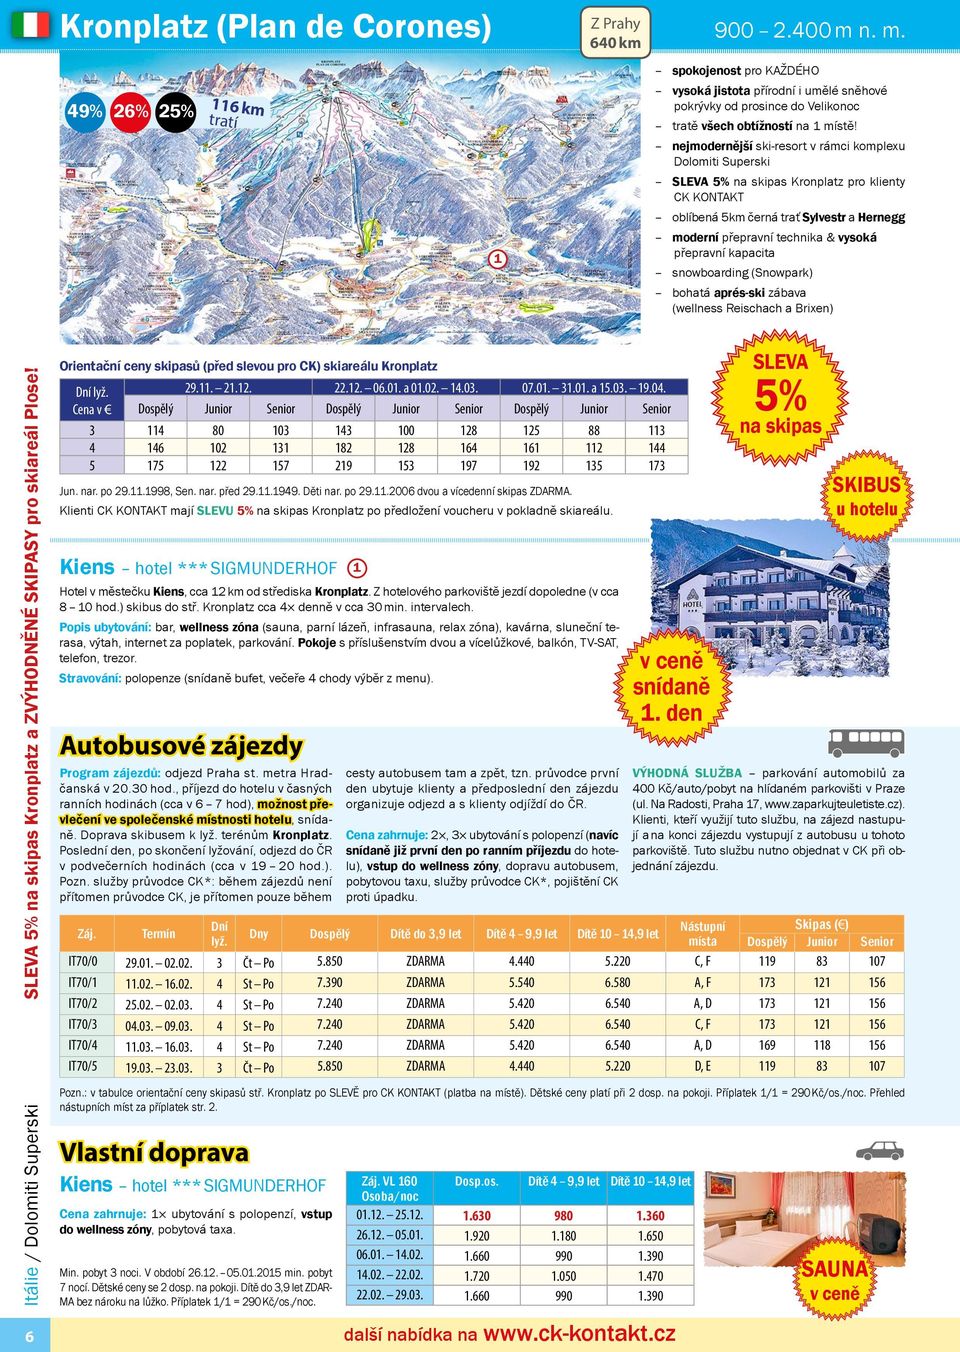 nejmodernější ski-resort v rámci komplexu Dolomiti Superski SLEVA 5% na skipas Kronplatz pro klienty CK KONTAKT oblíbená 5km černá trať Sylvestr a Hernegg moderní přepravní technika & vysoká